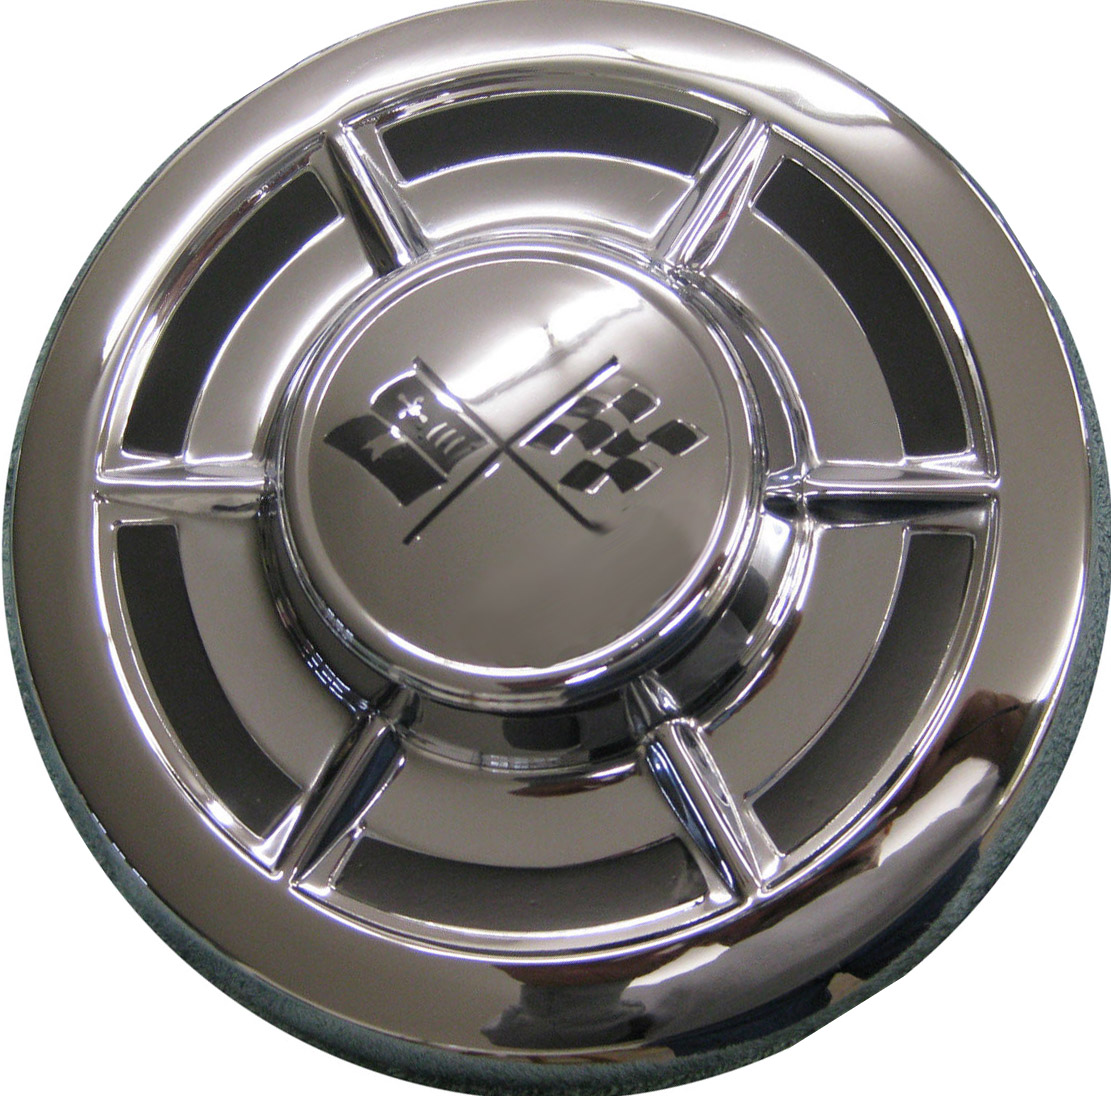 chevrolet hubcaps